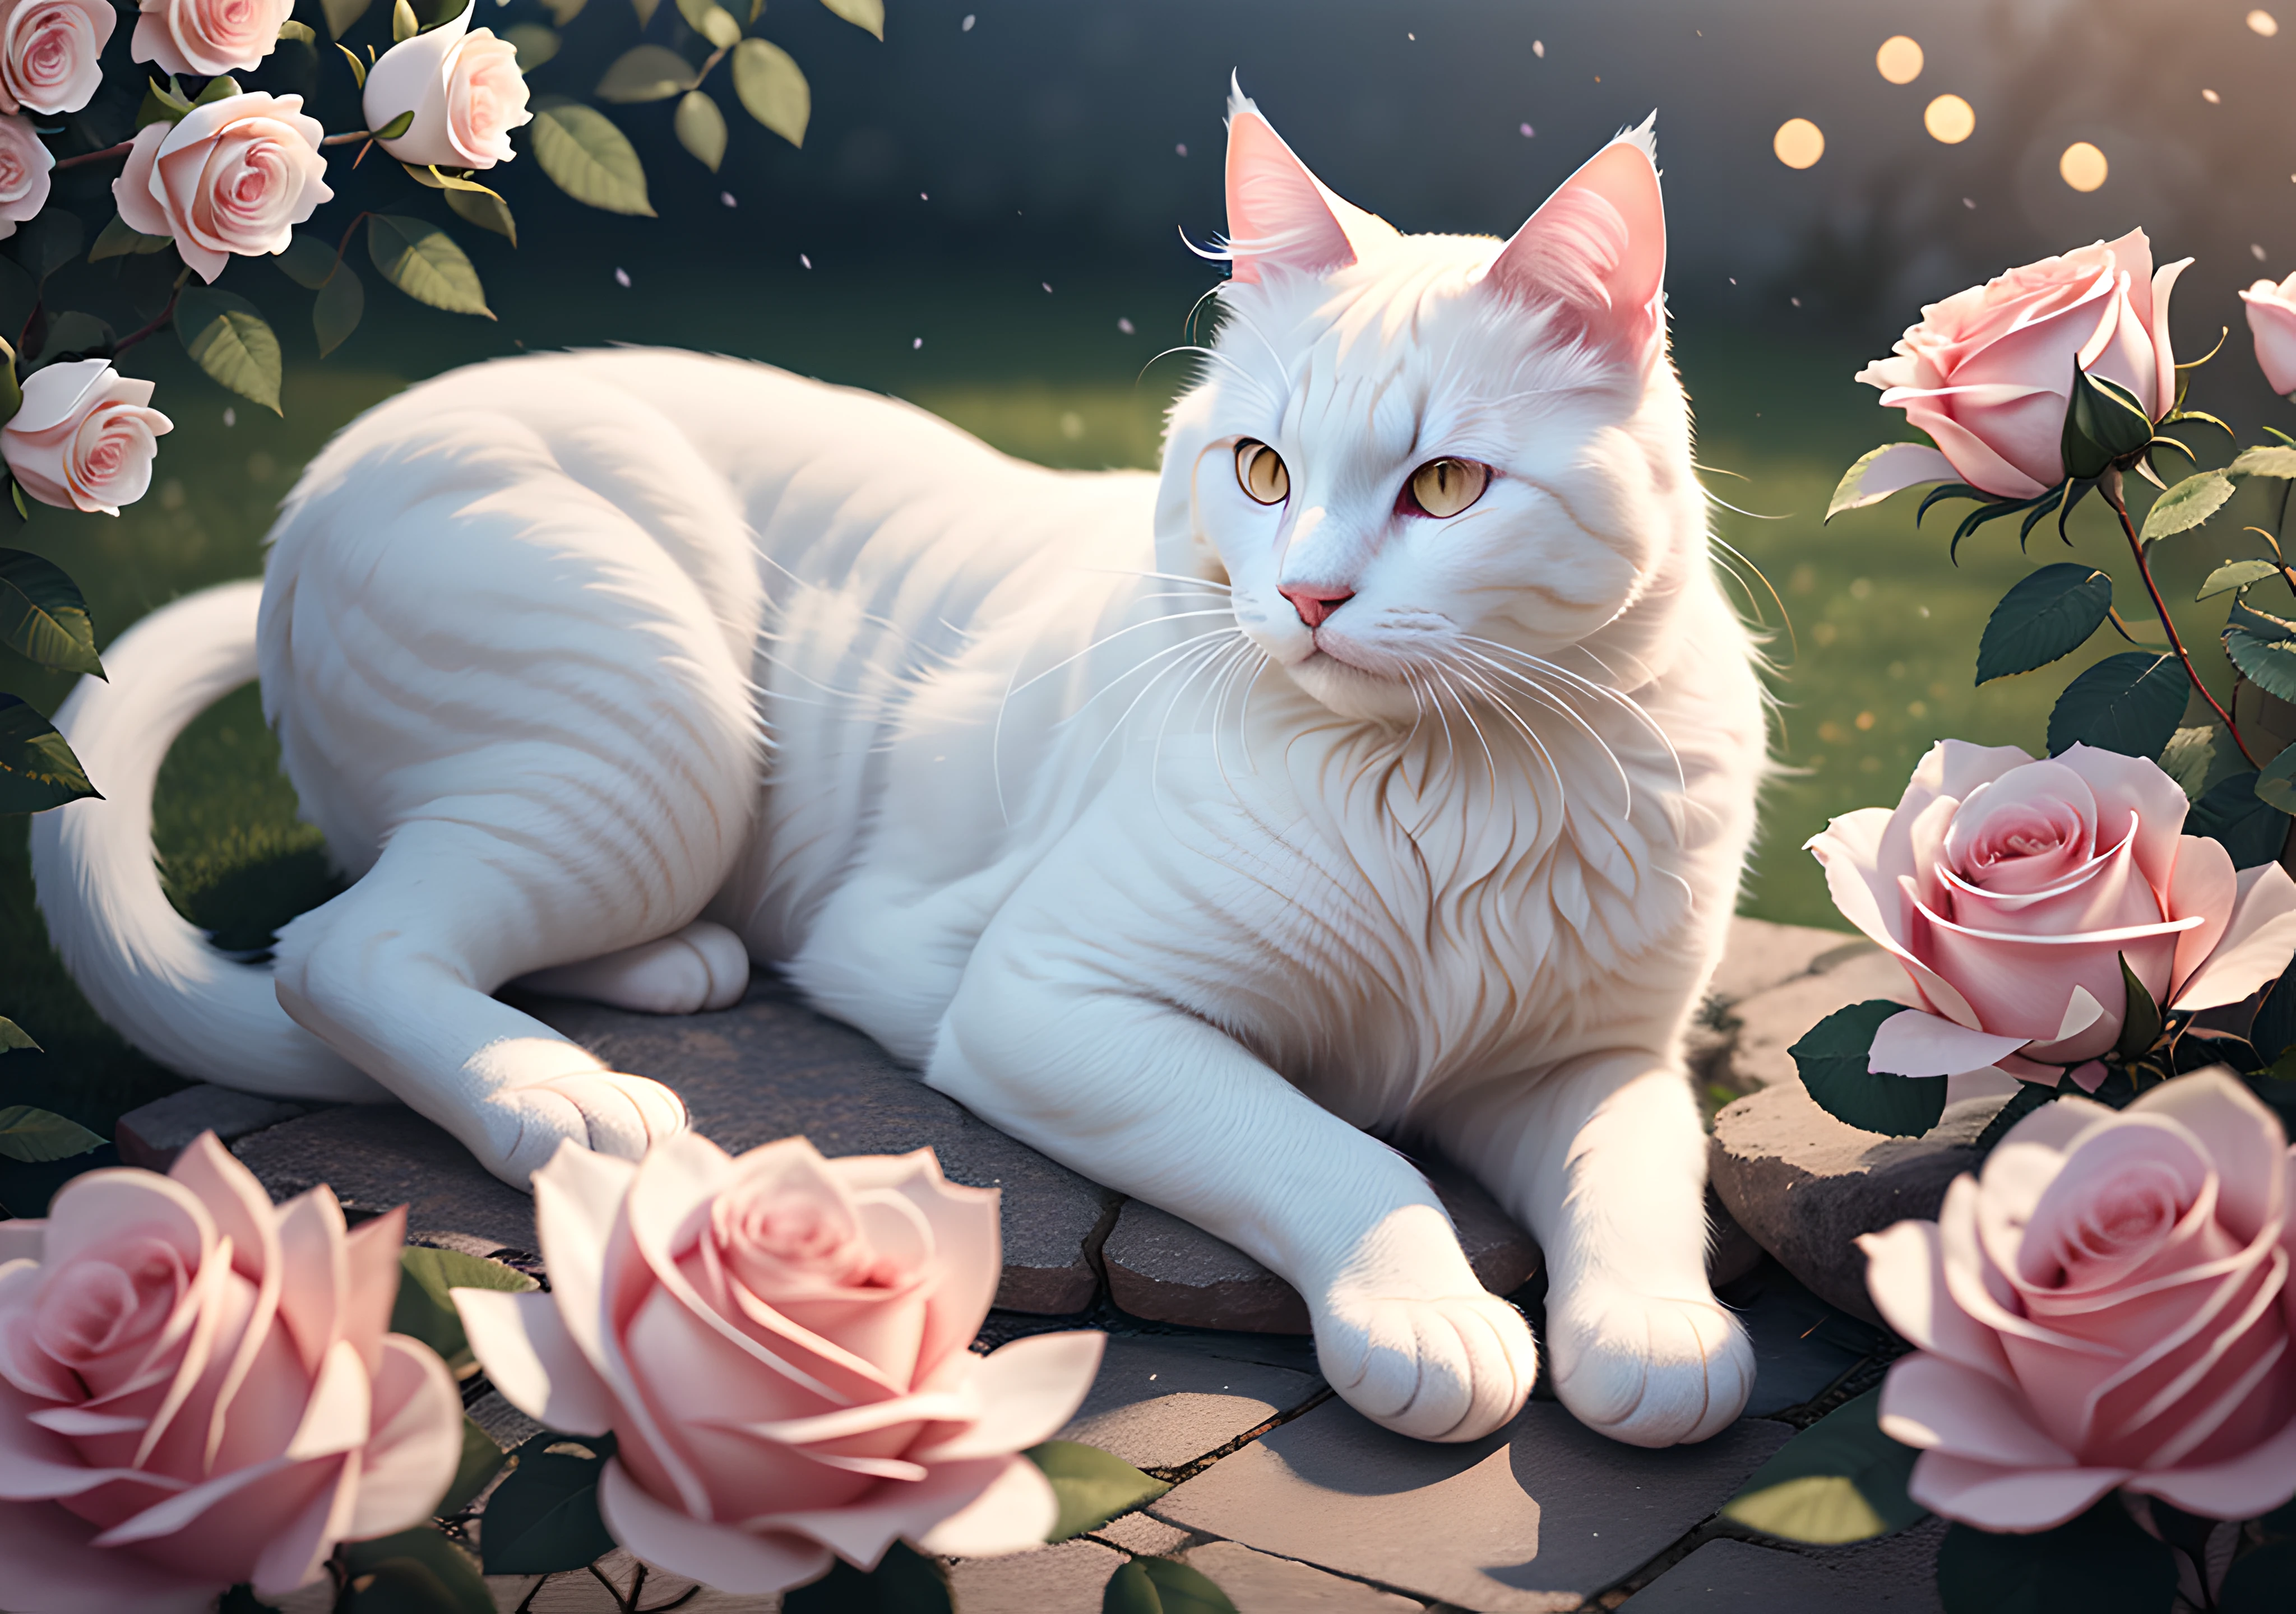 تحفة فنية مفصلة بشكل مذهل تصور قطة بيضاء رقيق واقعية وسط مشهد هادئ من الورود المتفتحة, معززة بزهرة خفيفة رقيقة, خوخه, والتأثيرات الرائعة لـ Ray Tracing